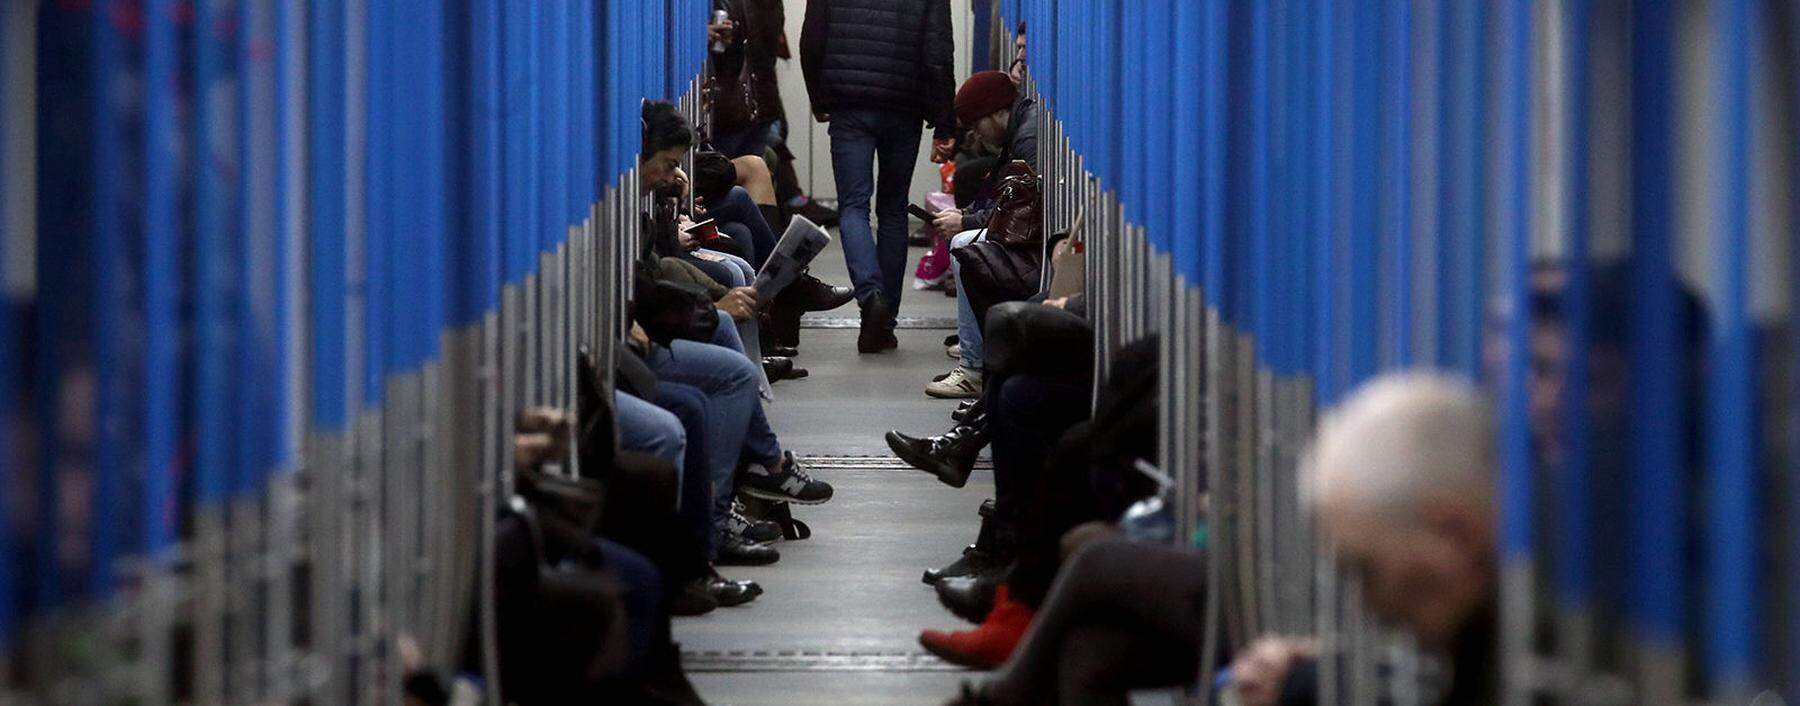 Die Covid-19-Krise ist in Russland angekommen. Die Moskauer Metro ist zur Stoßzeit trotzdem voll, wenn auch nicht übervoll.